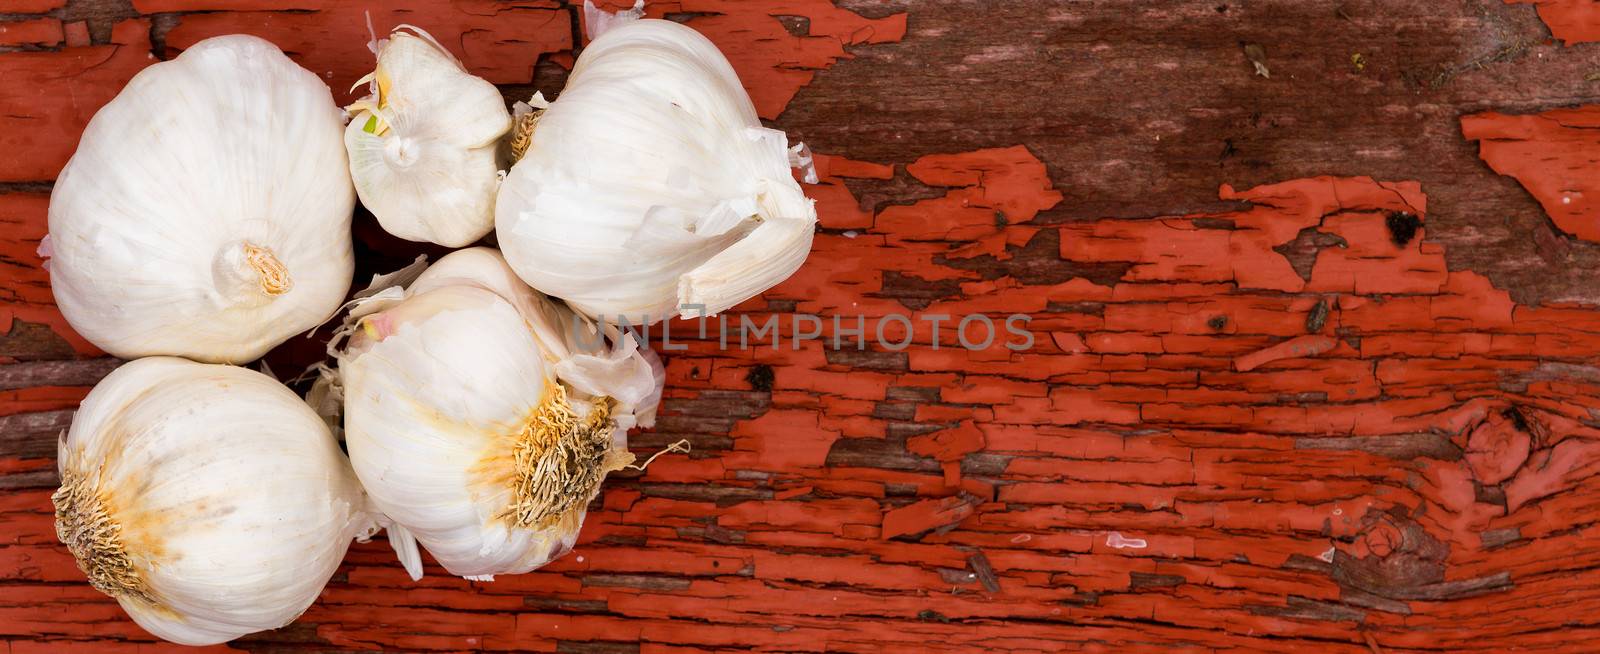 Fresh whole cloves of farm fresh garlic by coskun